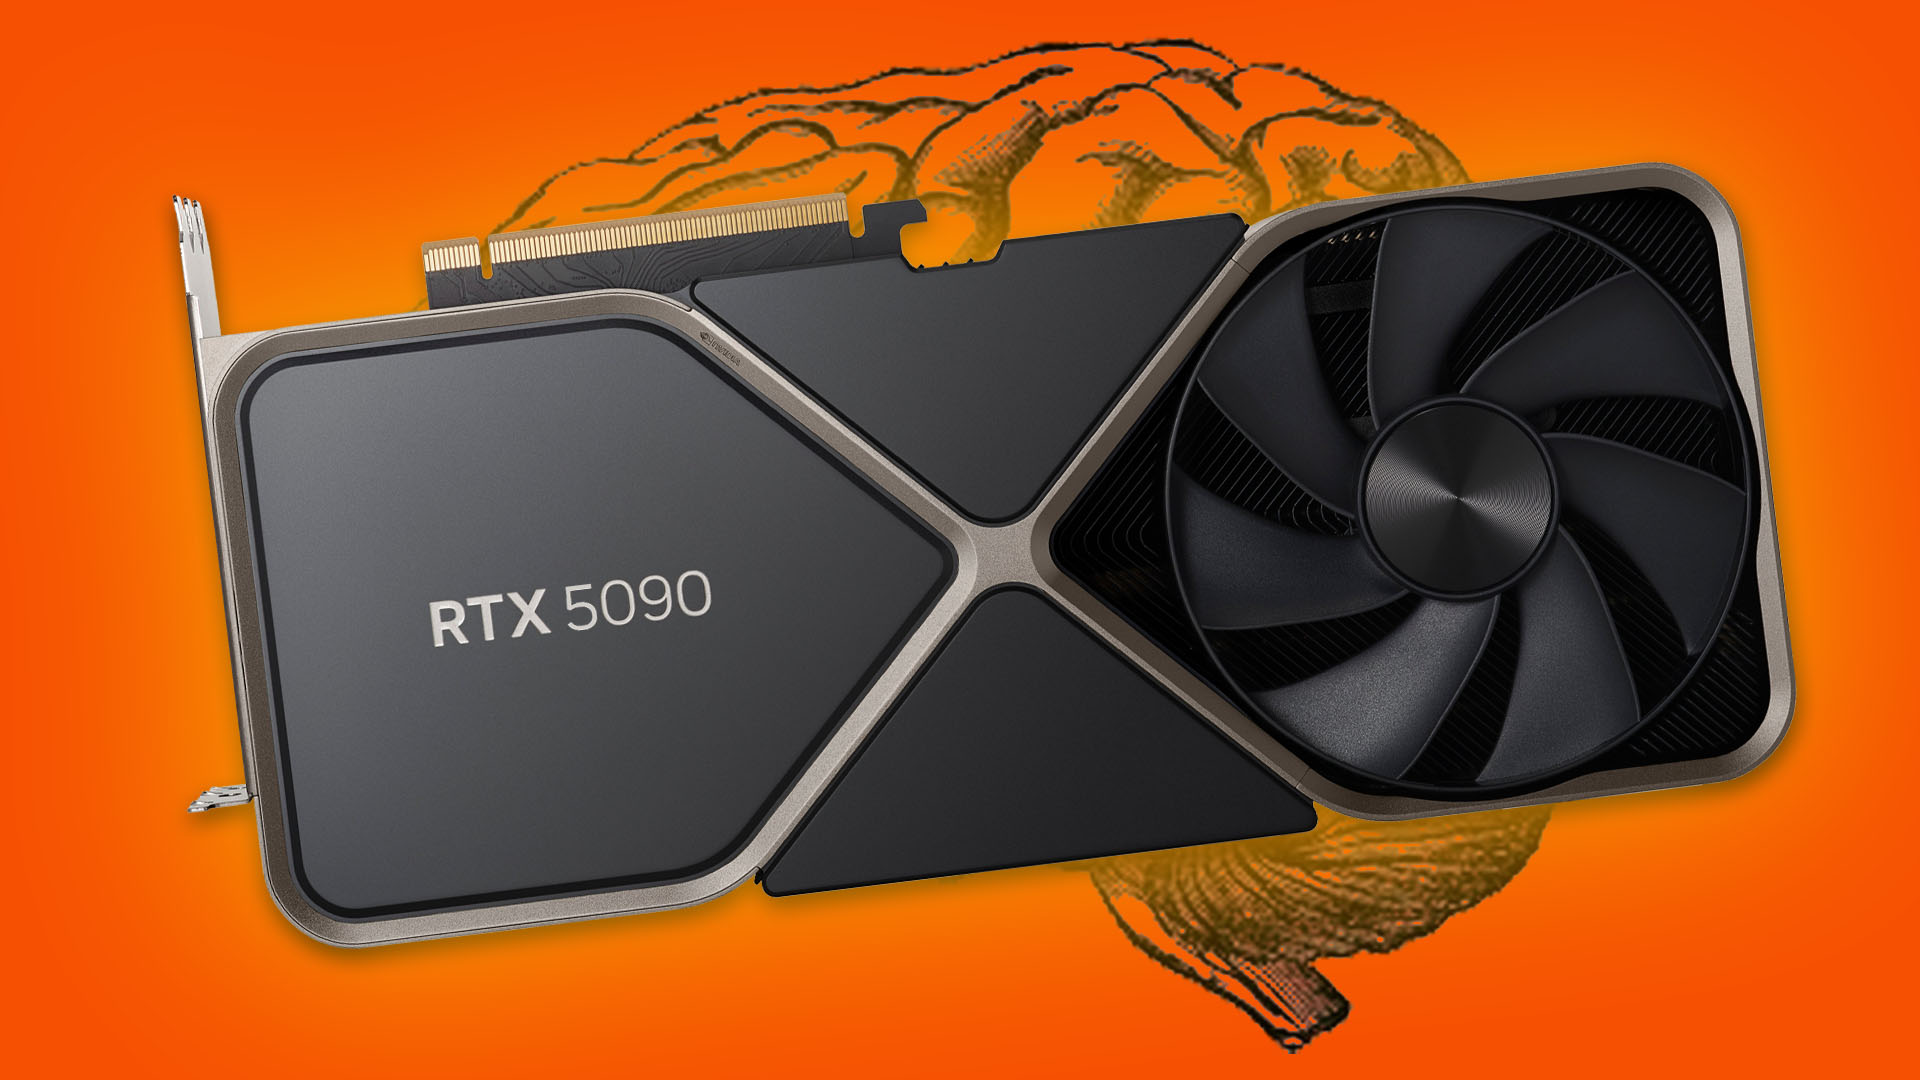 Zvonuri despre Nvidia GeForce RTX 5090 tape-out: mai mica decat 4090, bus de 448 biti, matrita monolitica